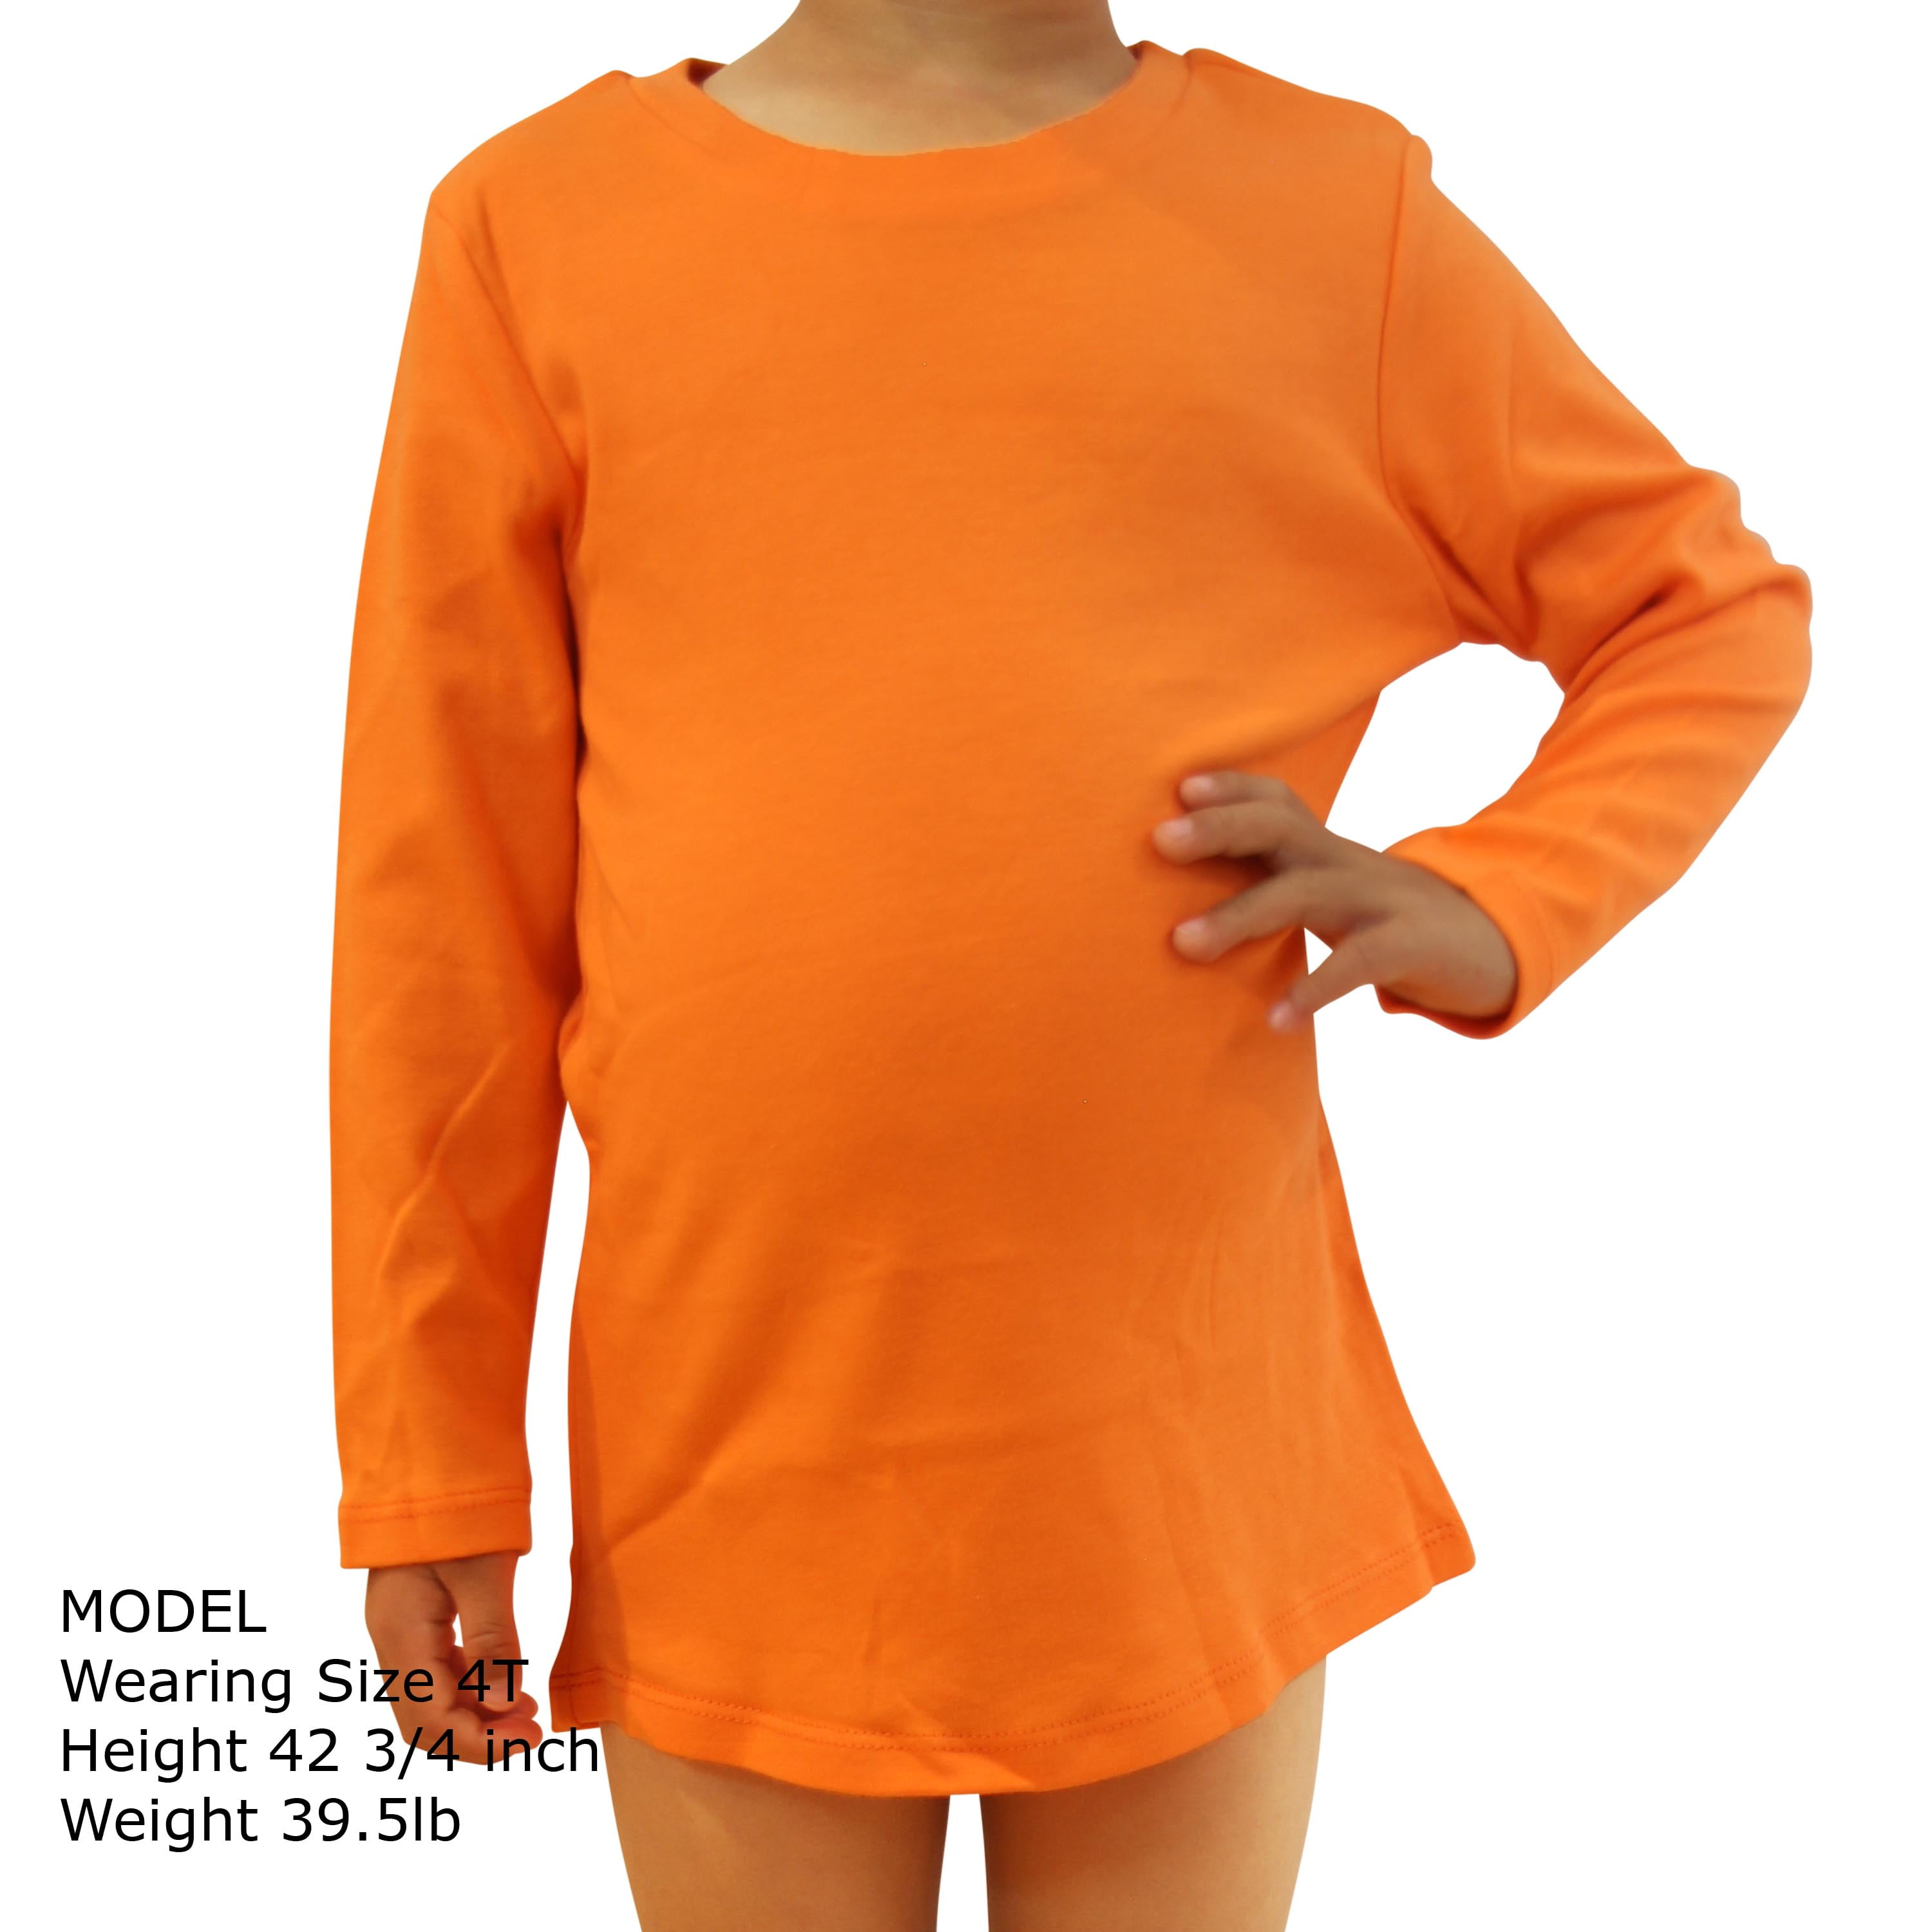 Kids Crew Neck Long Sleeve Plain Color Cotton Shirt, Orange, 5T, 1 pc.